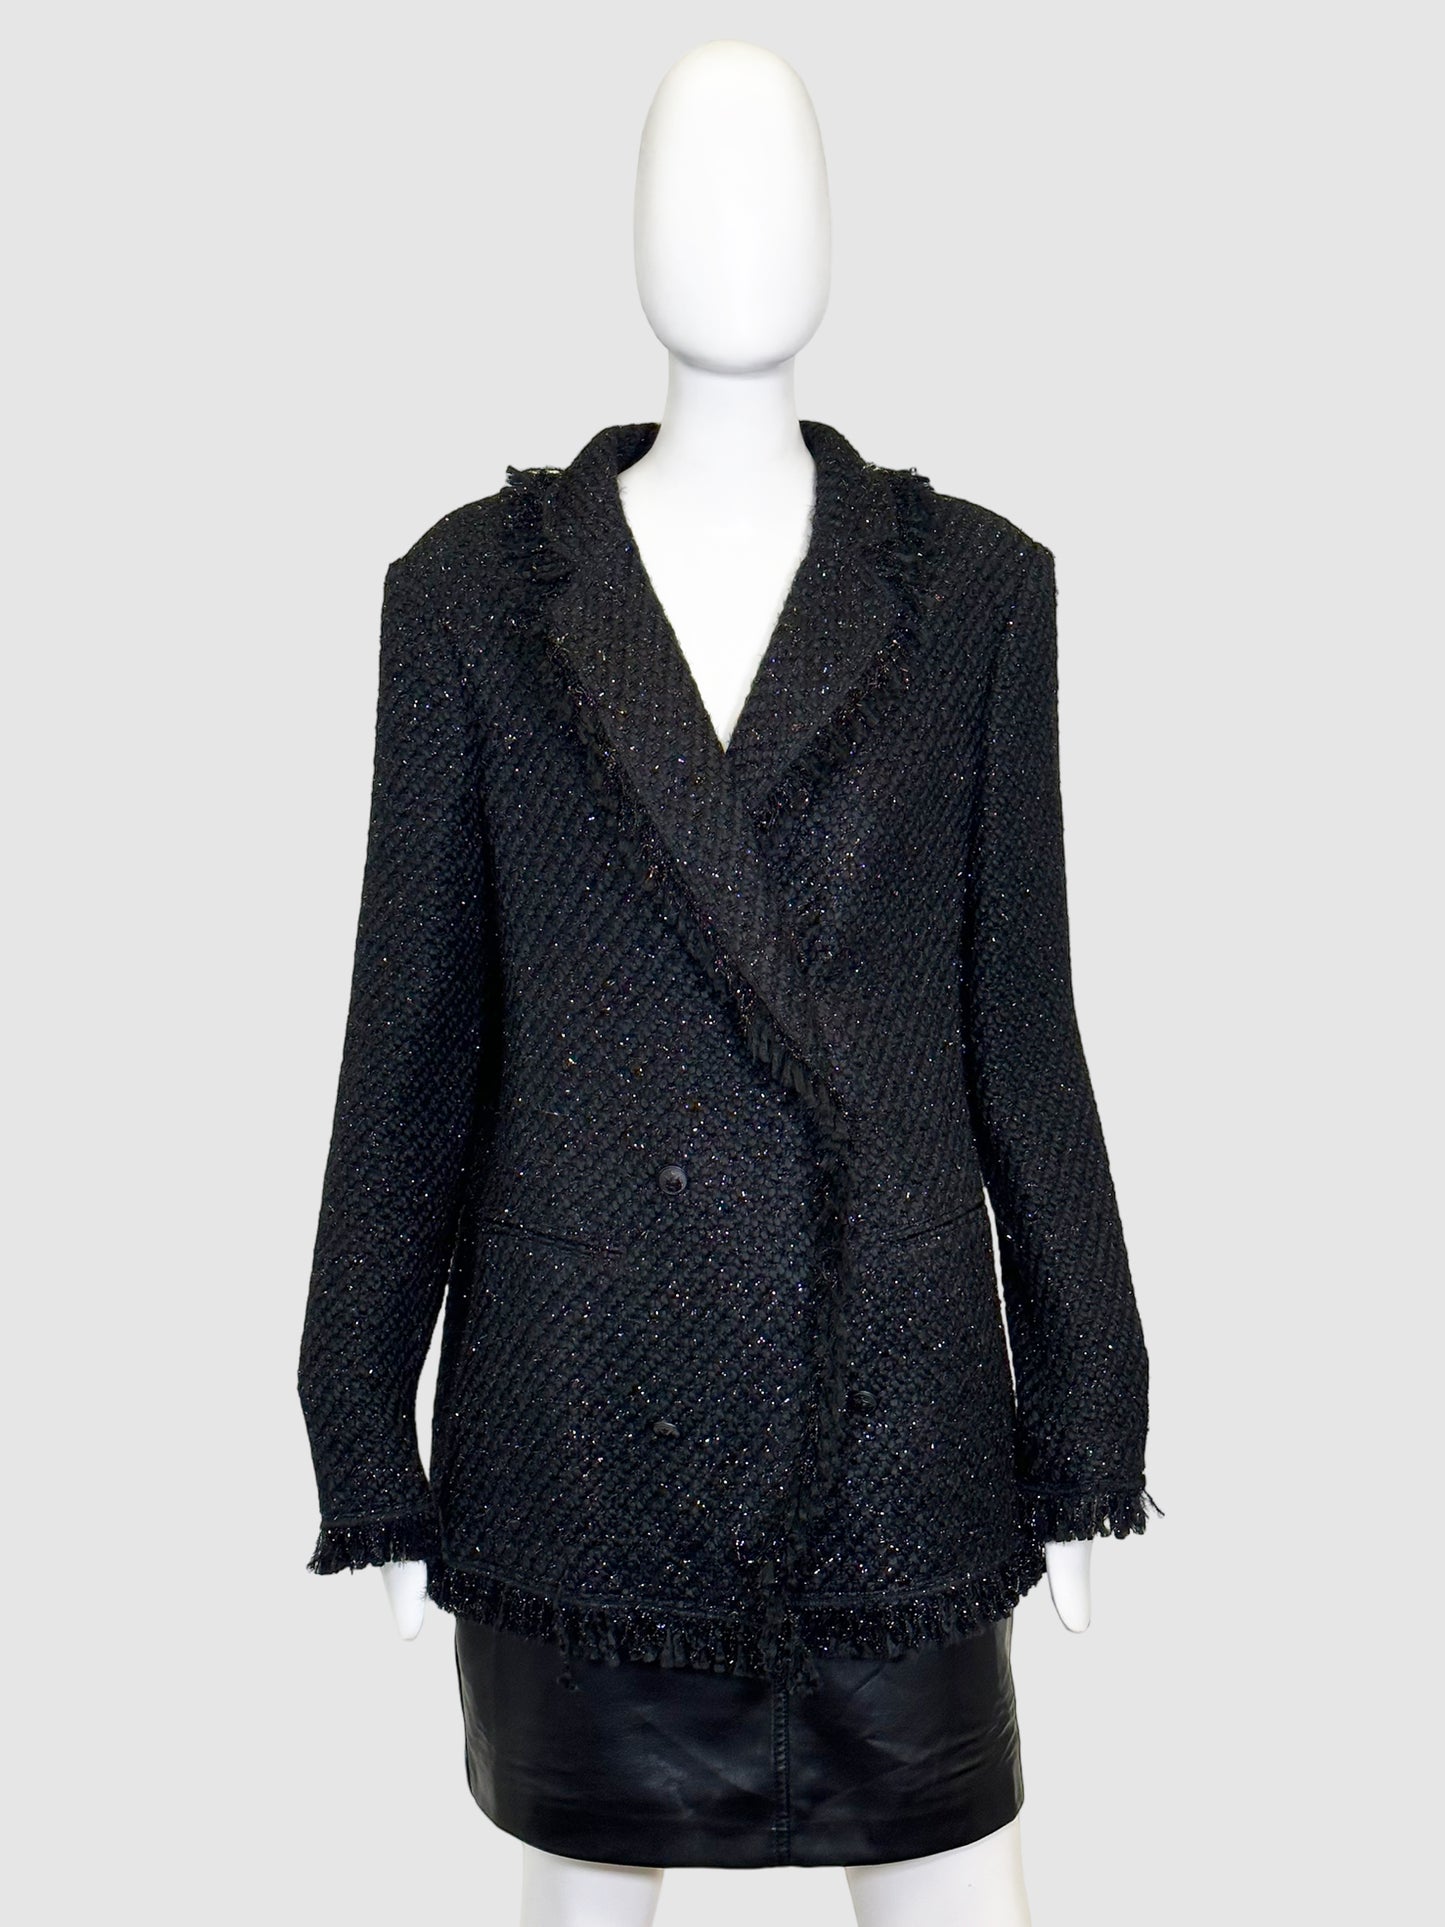 Laurel Sparkling Tweed Soft. Blazer - Size 14